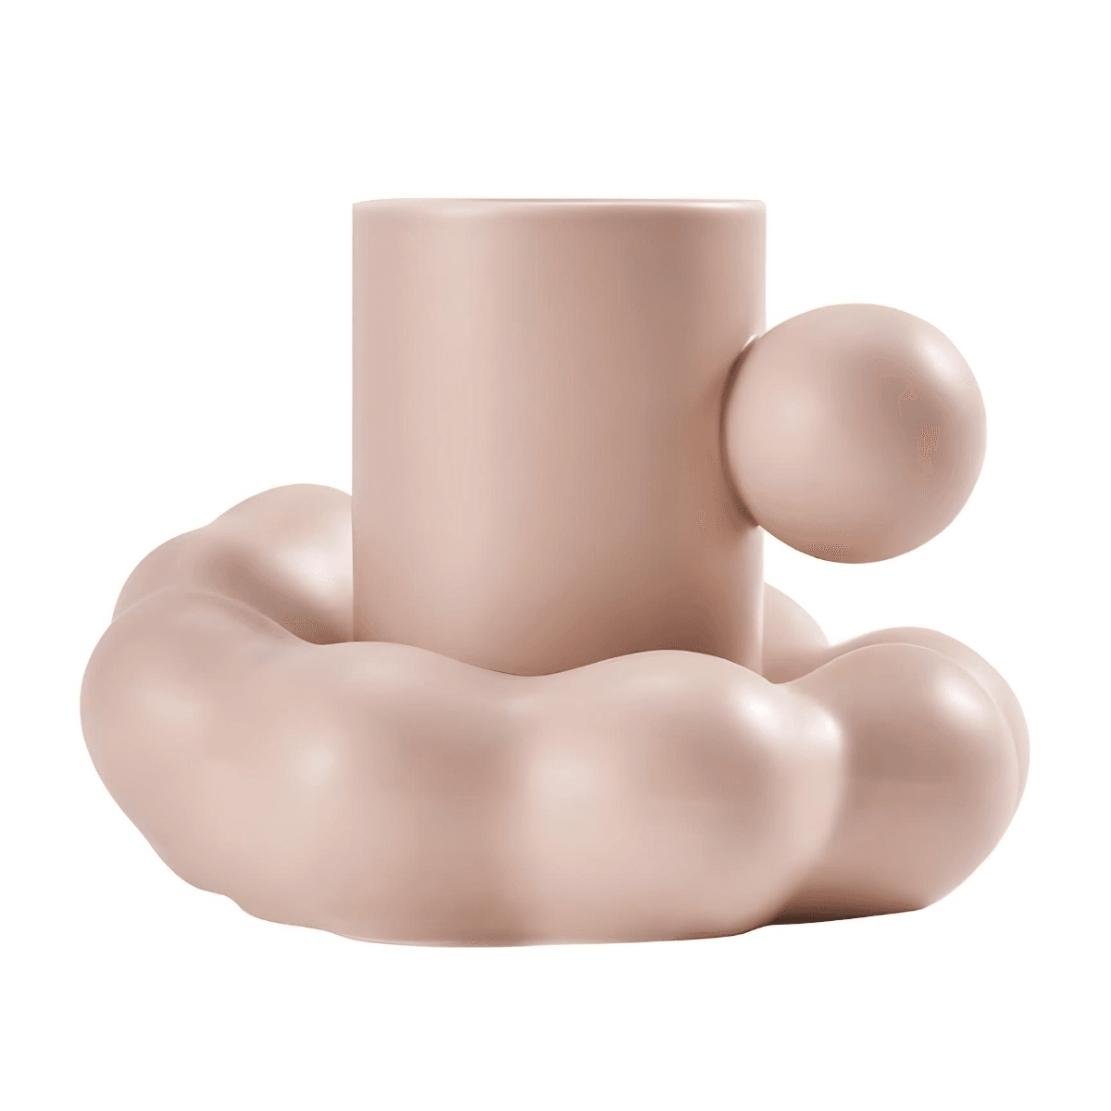 Pink ball handle mug with cloud saucer